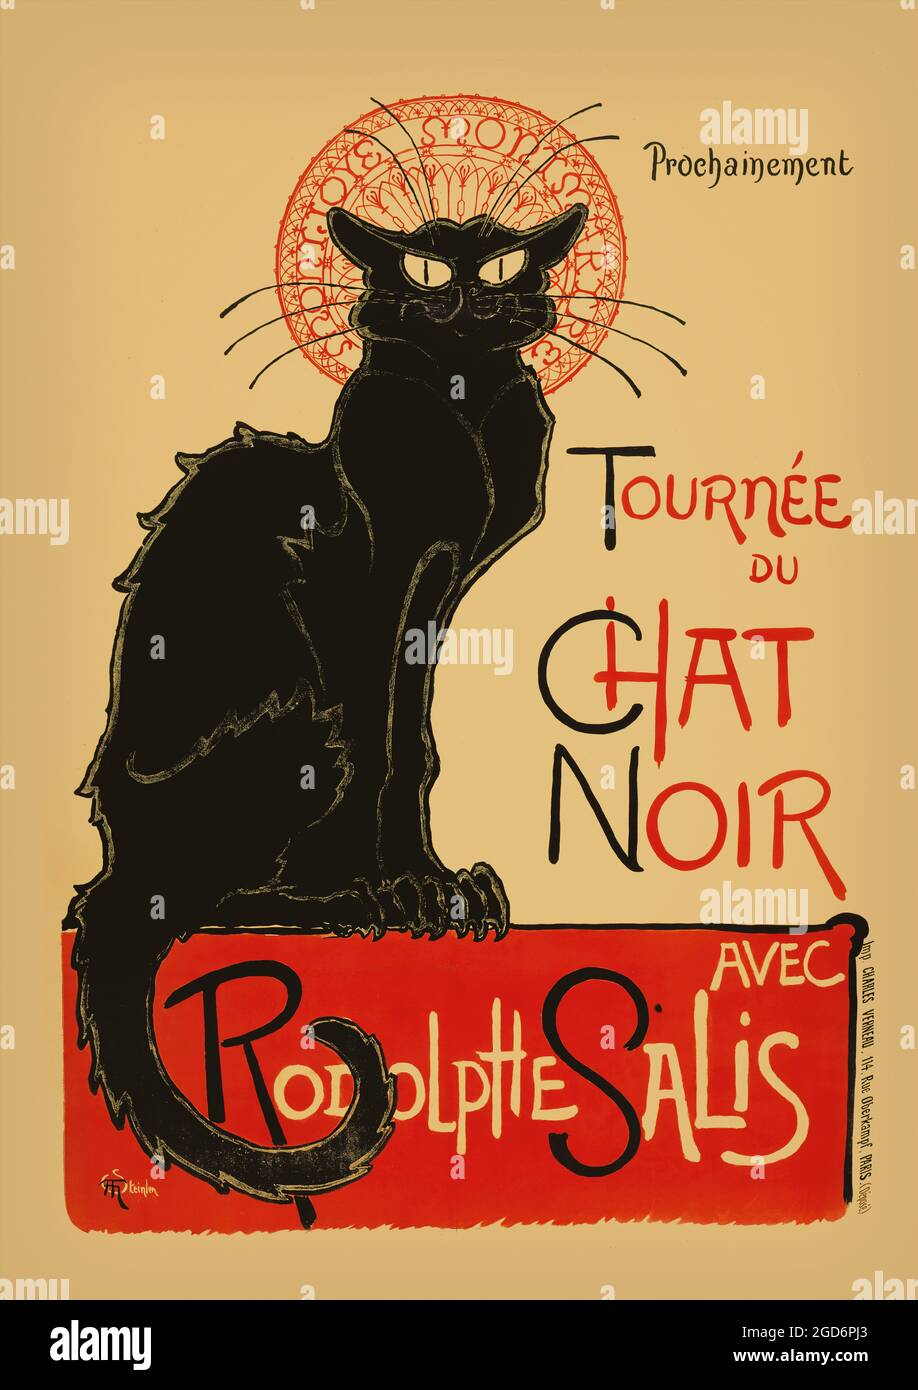 Tournée du Chat Noir de Rodolphe Salis (Tour du Chat Noir de Rodolphe Salis) affiche emblématique créée par Theophile Steinlen en 1896. Cabaret / théâtre Banque D'Images